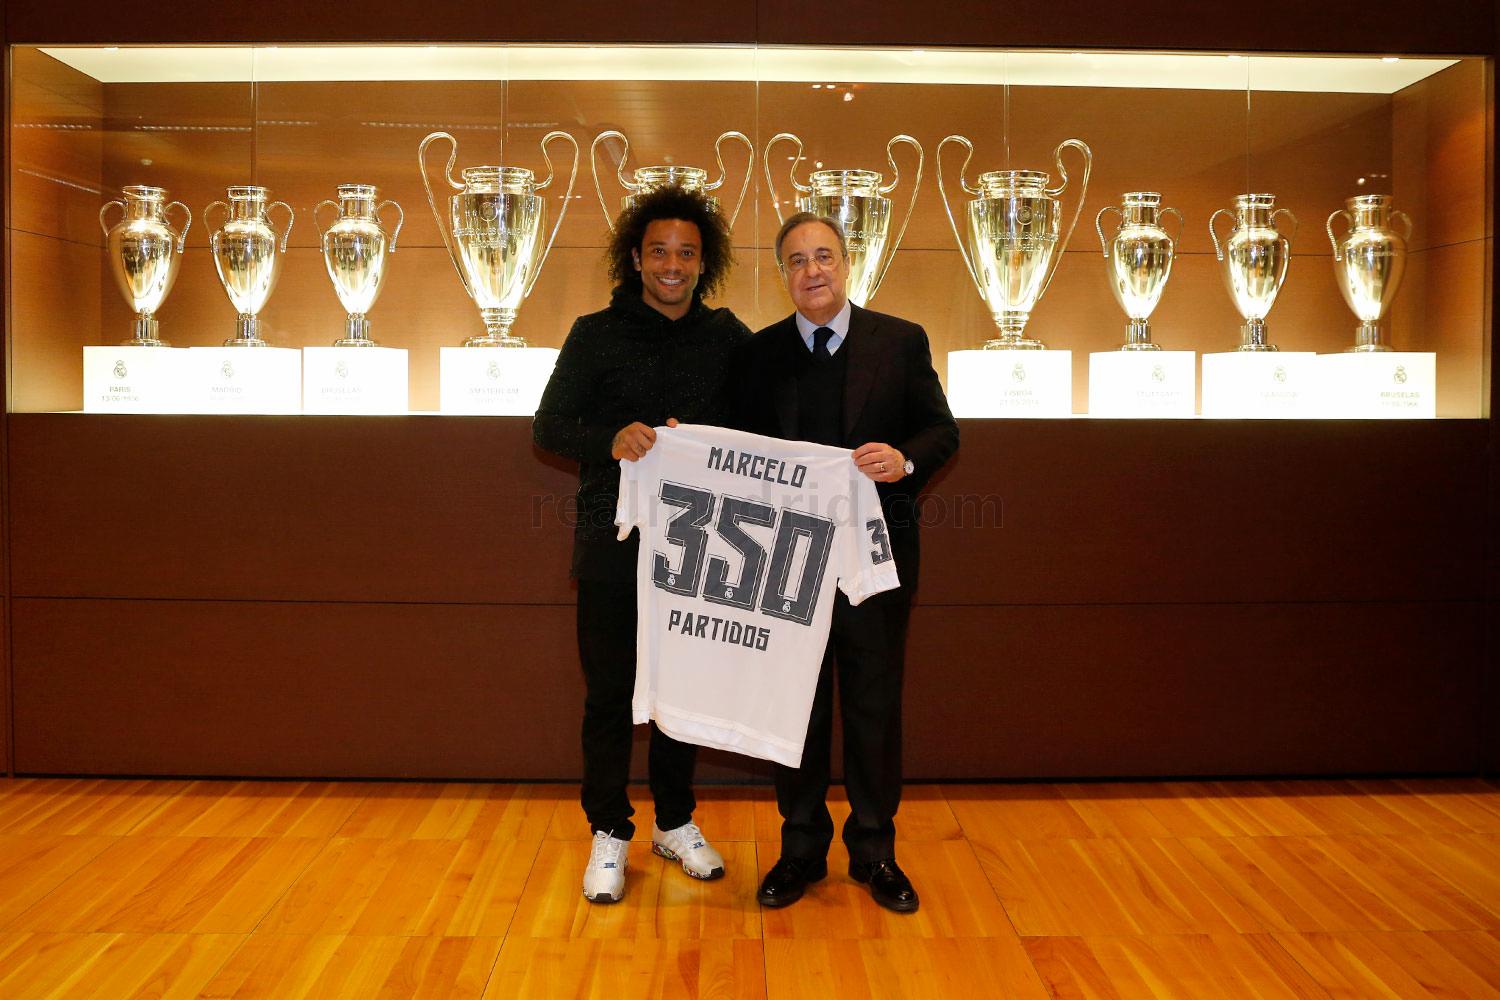 El presidente regaló una camiseta a Marcelo por sus 350 partidos